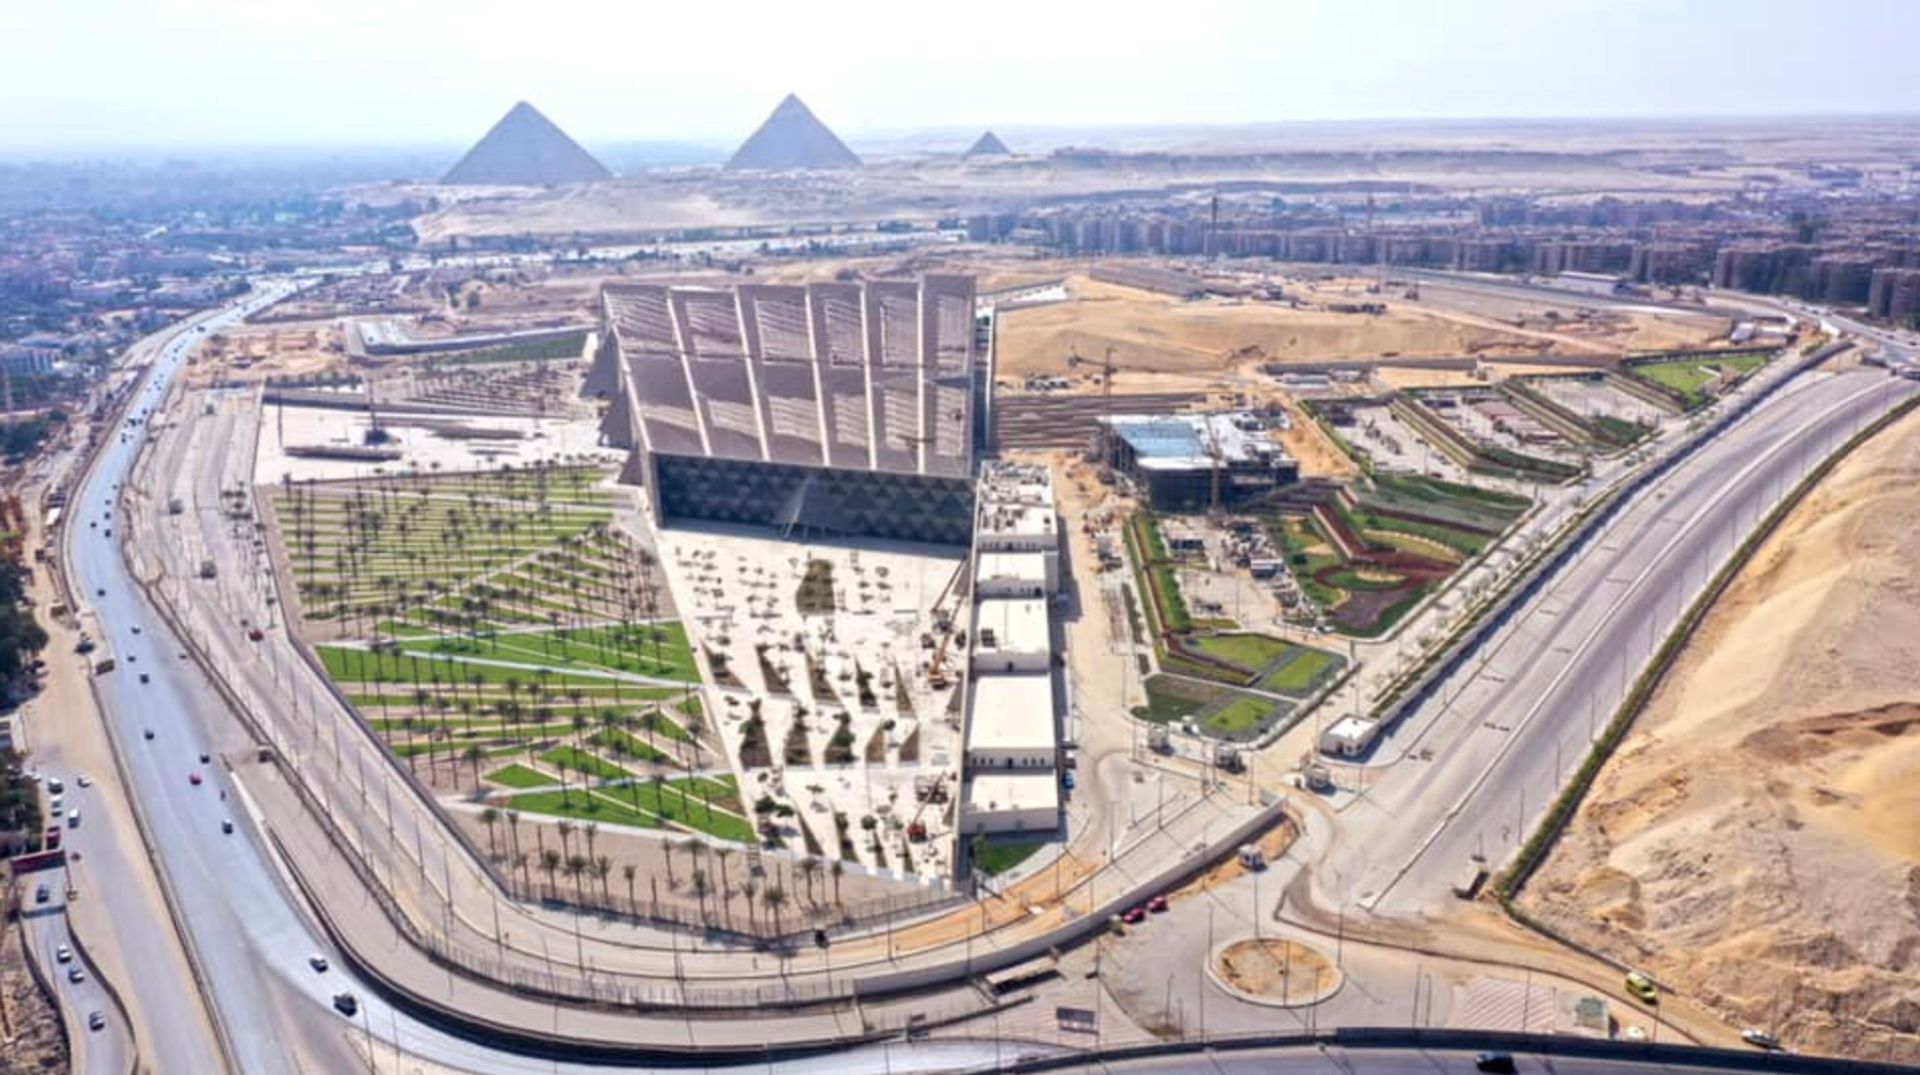 מתחם המוזיאון המצרי הגדול בגיזה, קהיר

צילום: משרד התיירות והעתיקות, מצרים/פייסבוק